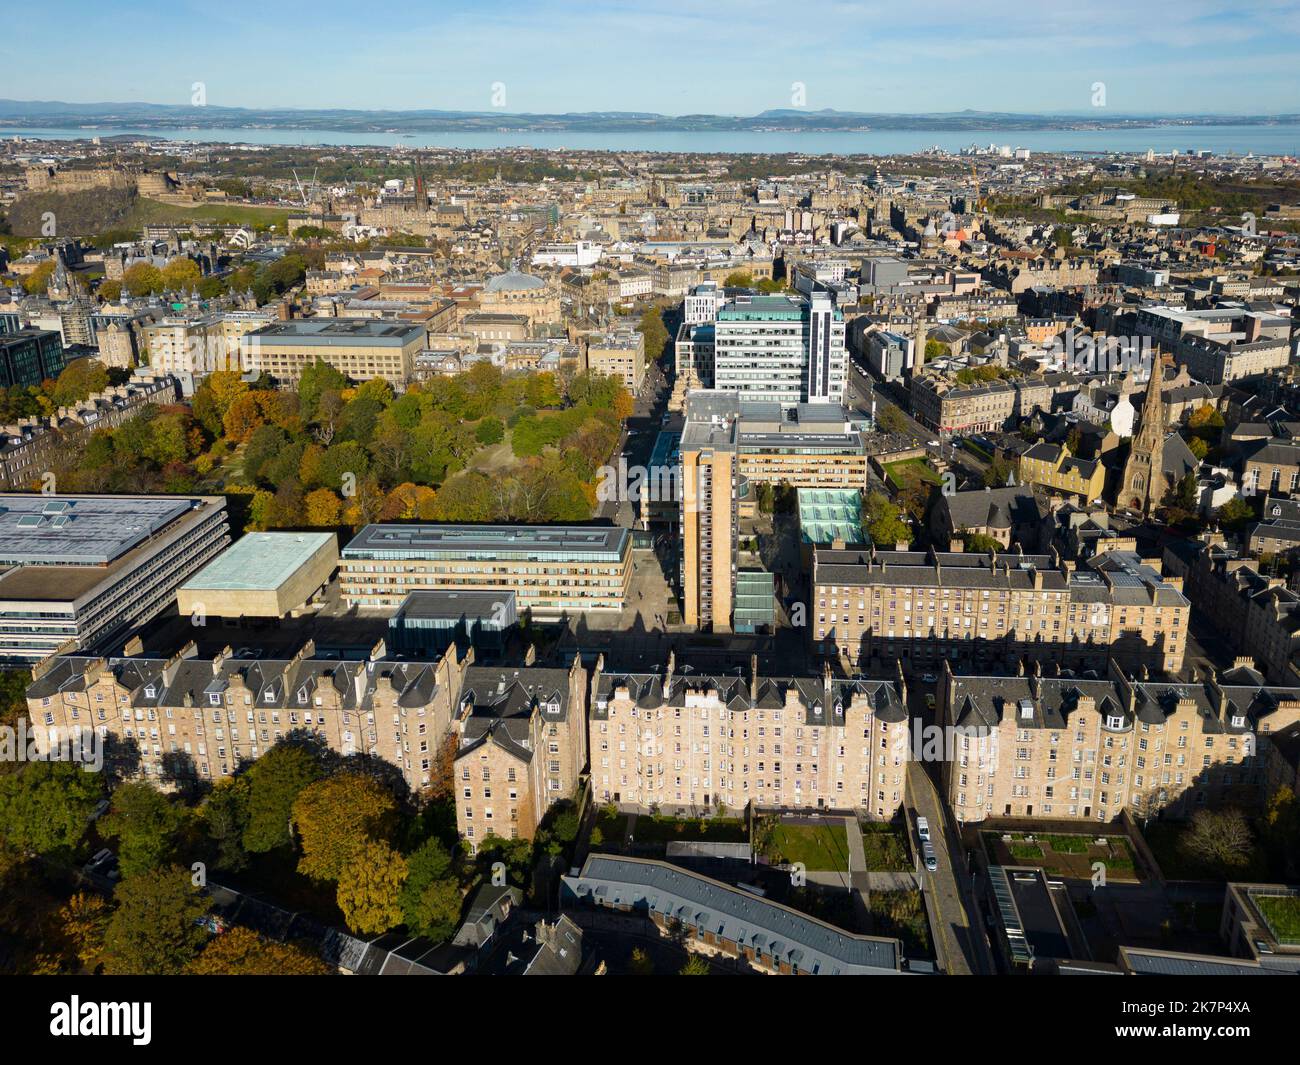 Vue aérienne du campus de l'université d'Édimbourg, Edimbourg, Écosse, Royaume-Uni Banque D'Images